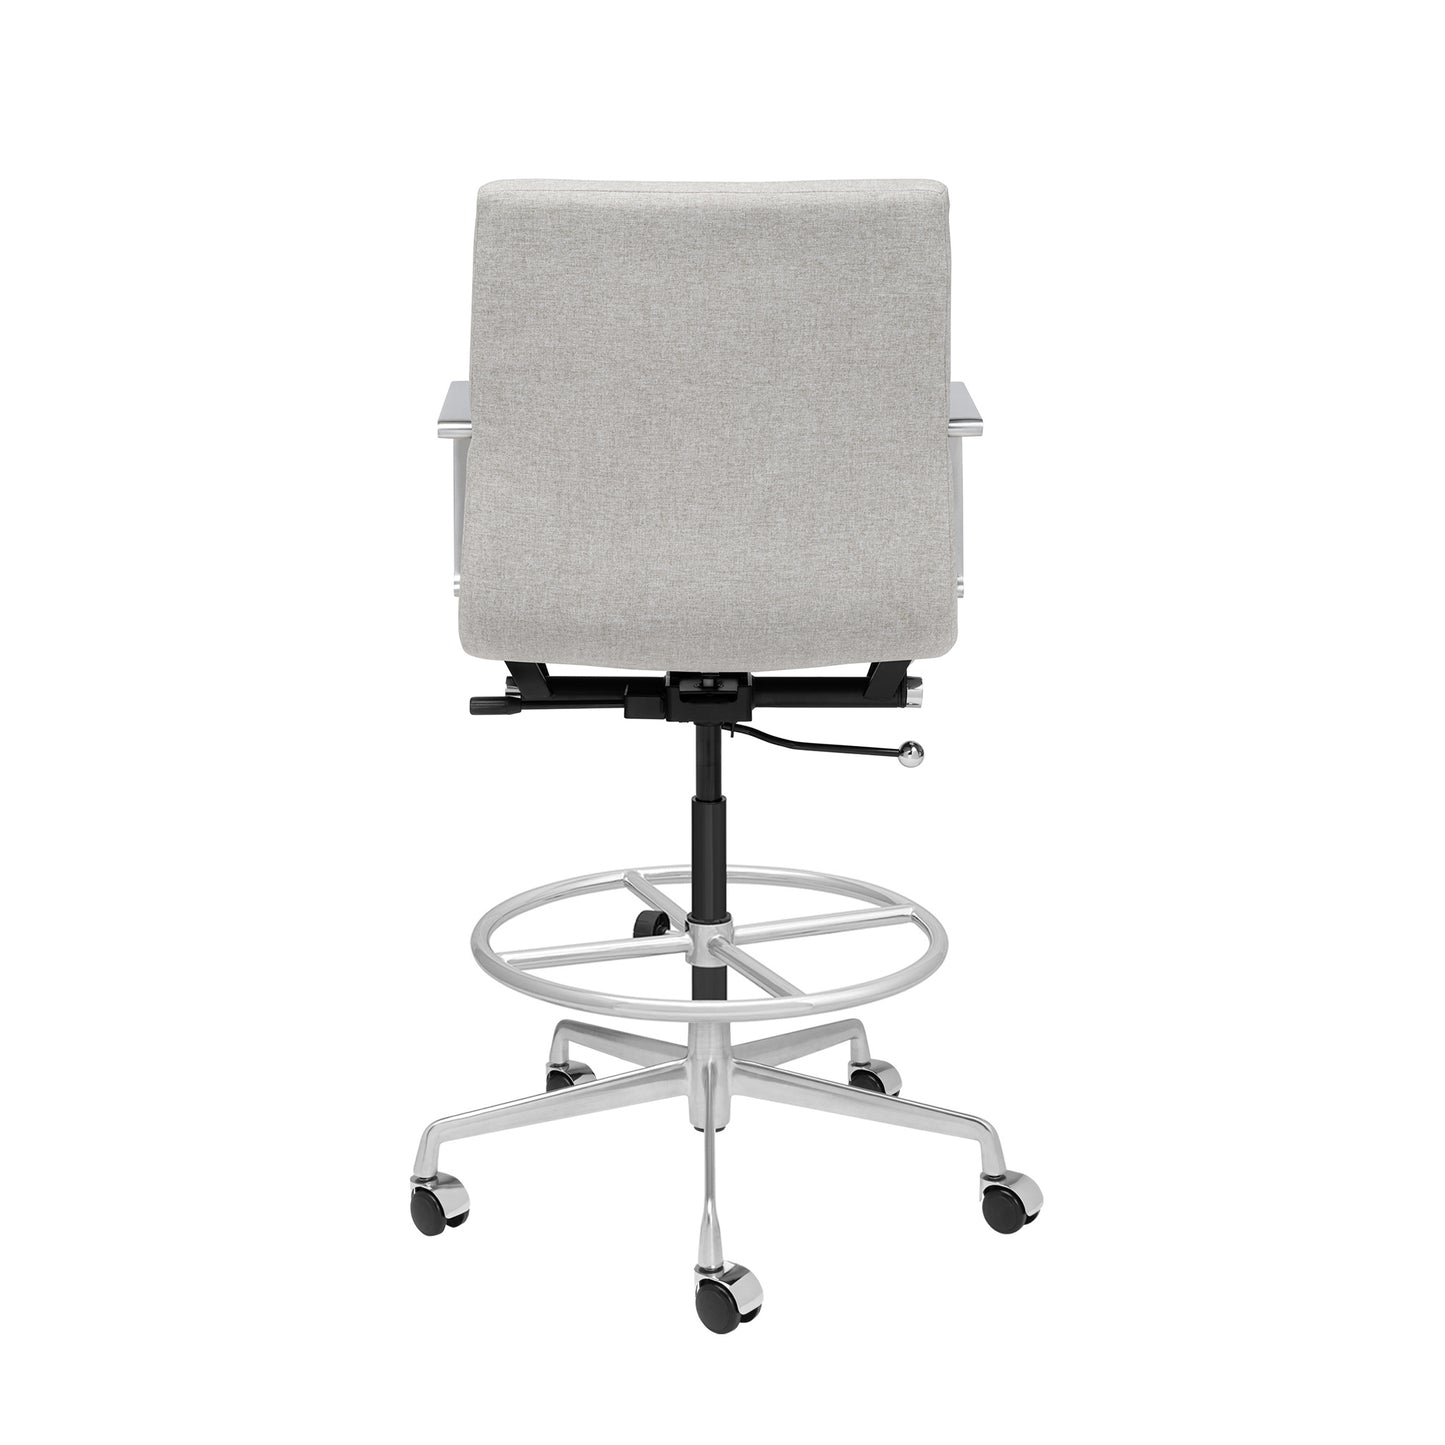 SHIPS MAY 17TH - SOHO II Ribbed Drafting Chair (Grey Fabric)